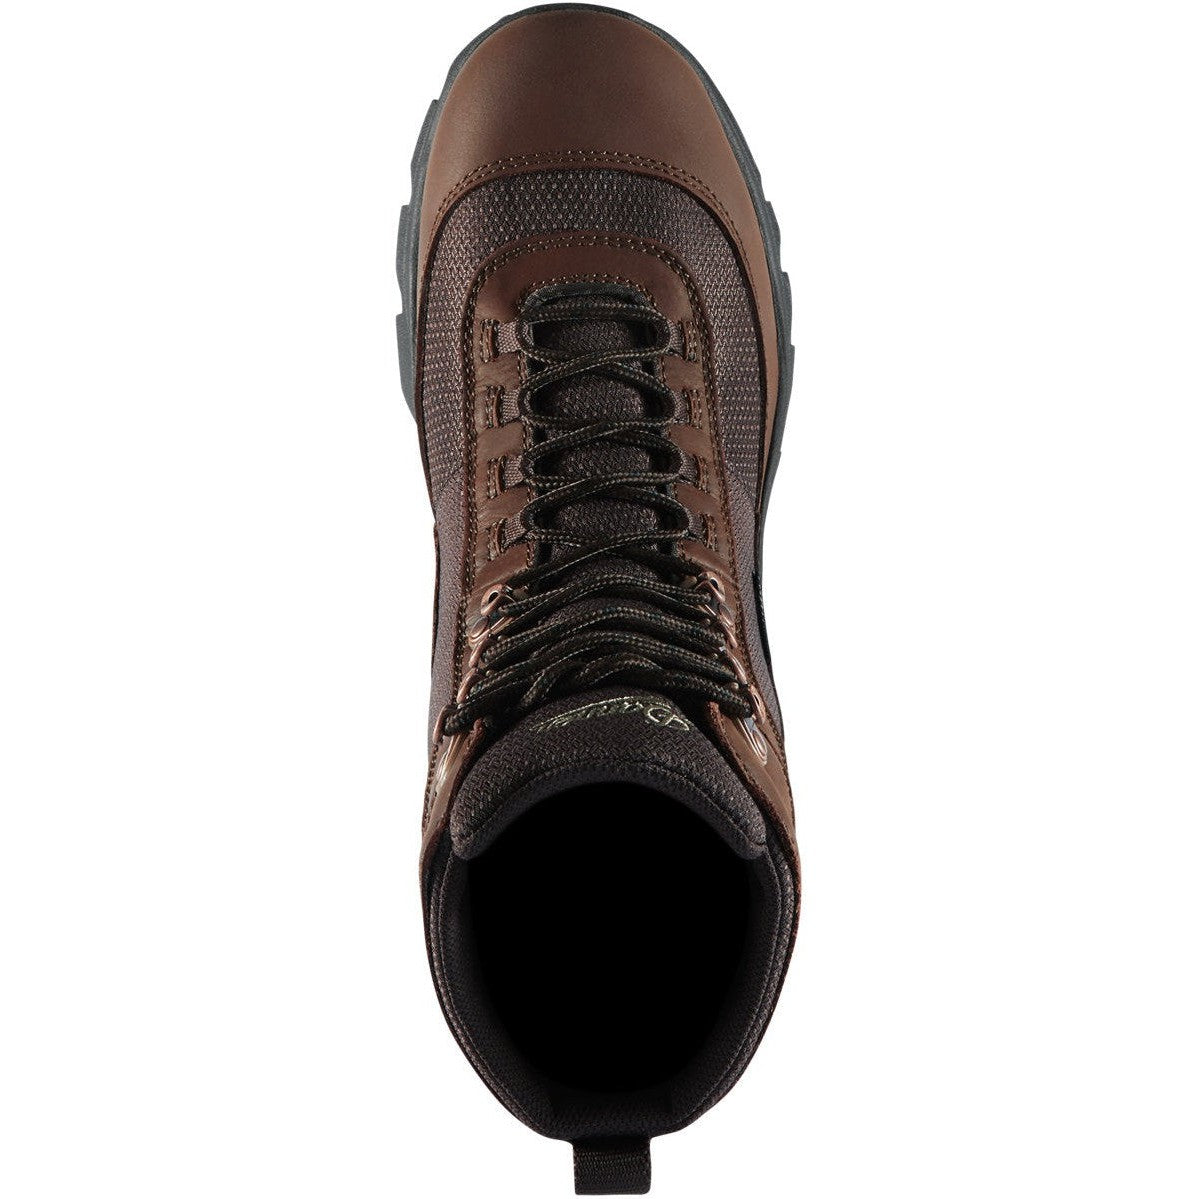 Danner Men's Element 8" Waterproof Hunt Boot - Brown - 47130  - Overlook Boots